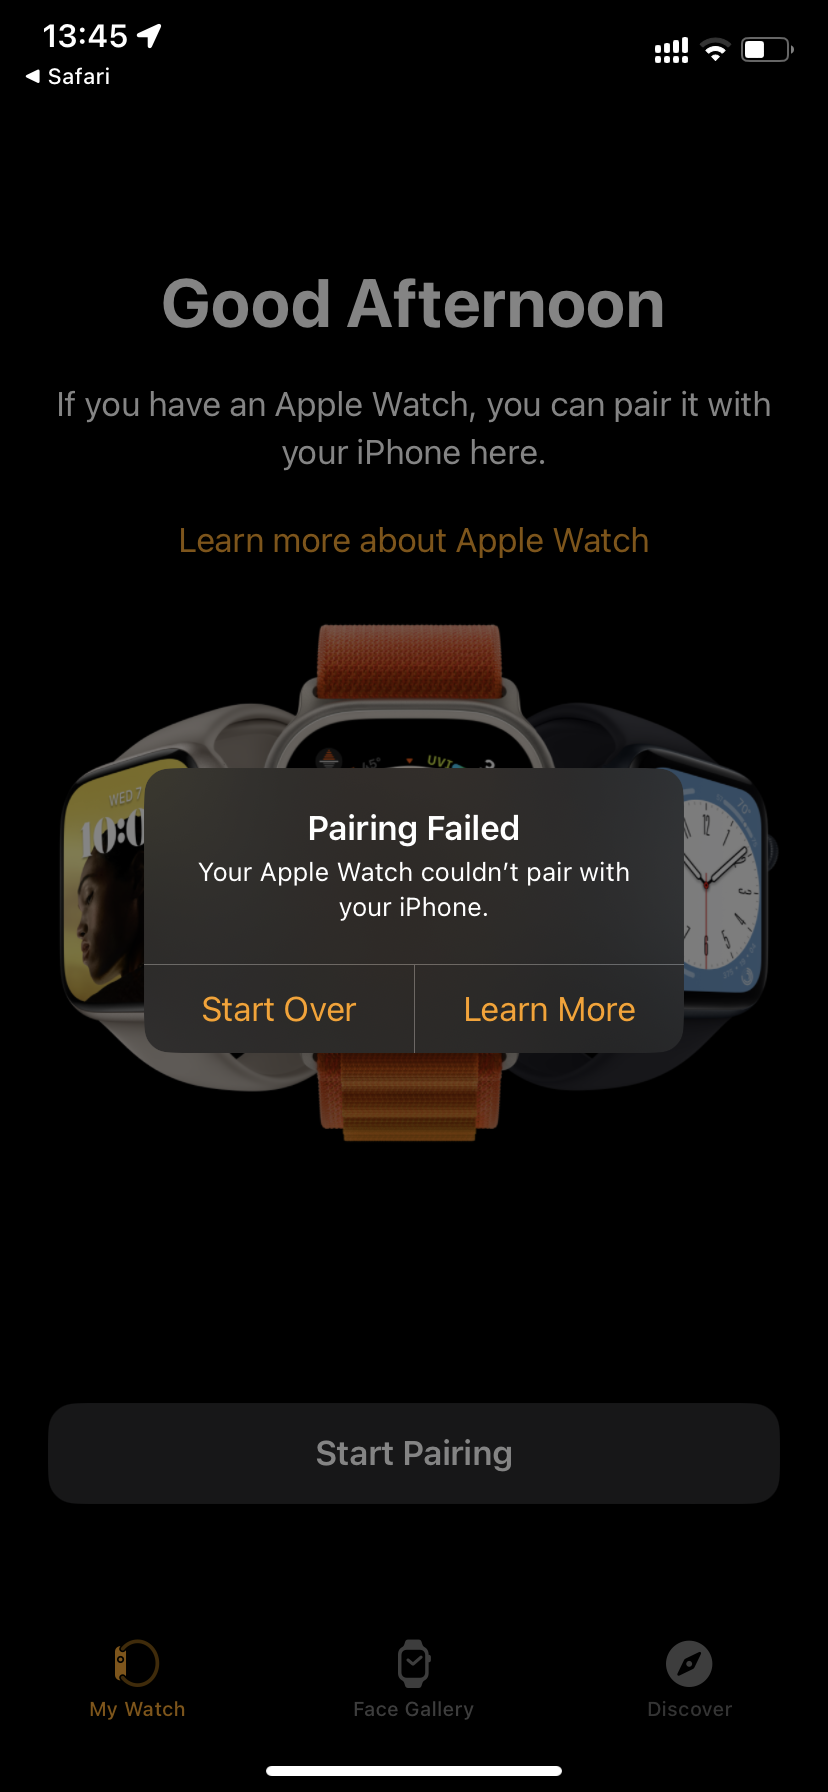 Lên ios 16 xong bị lỗi không thể kết nối apple watch. anh em có ai bị ko?